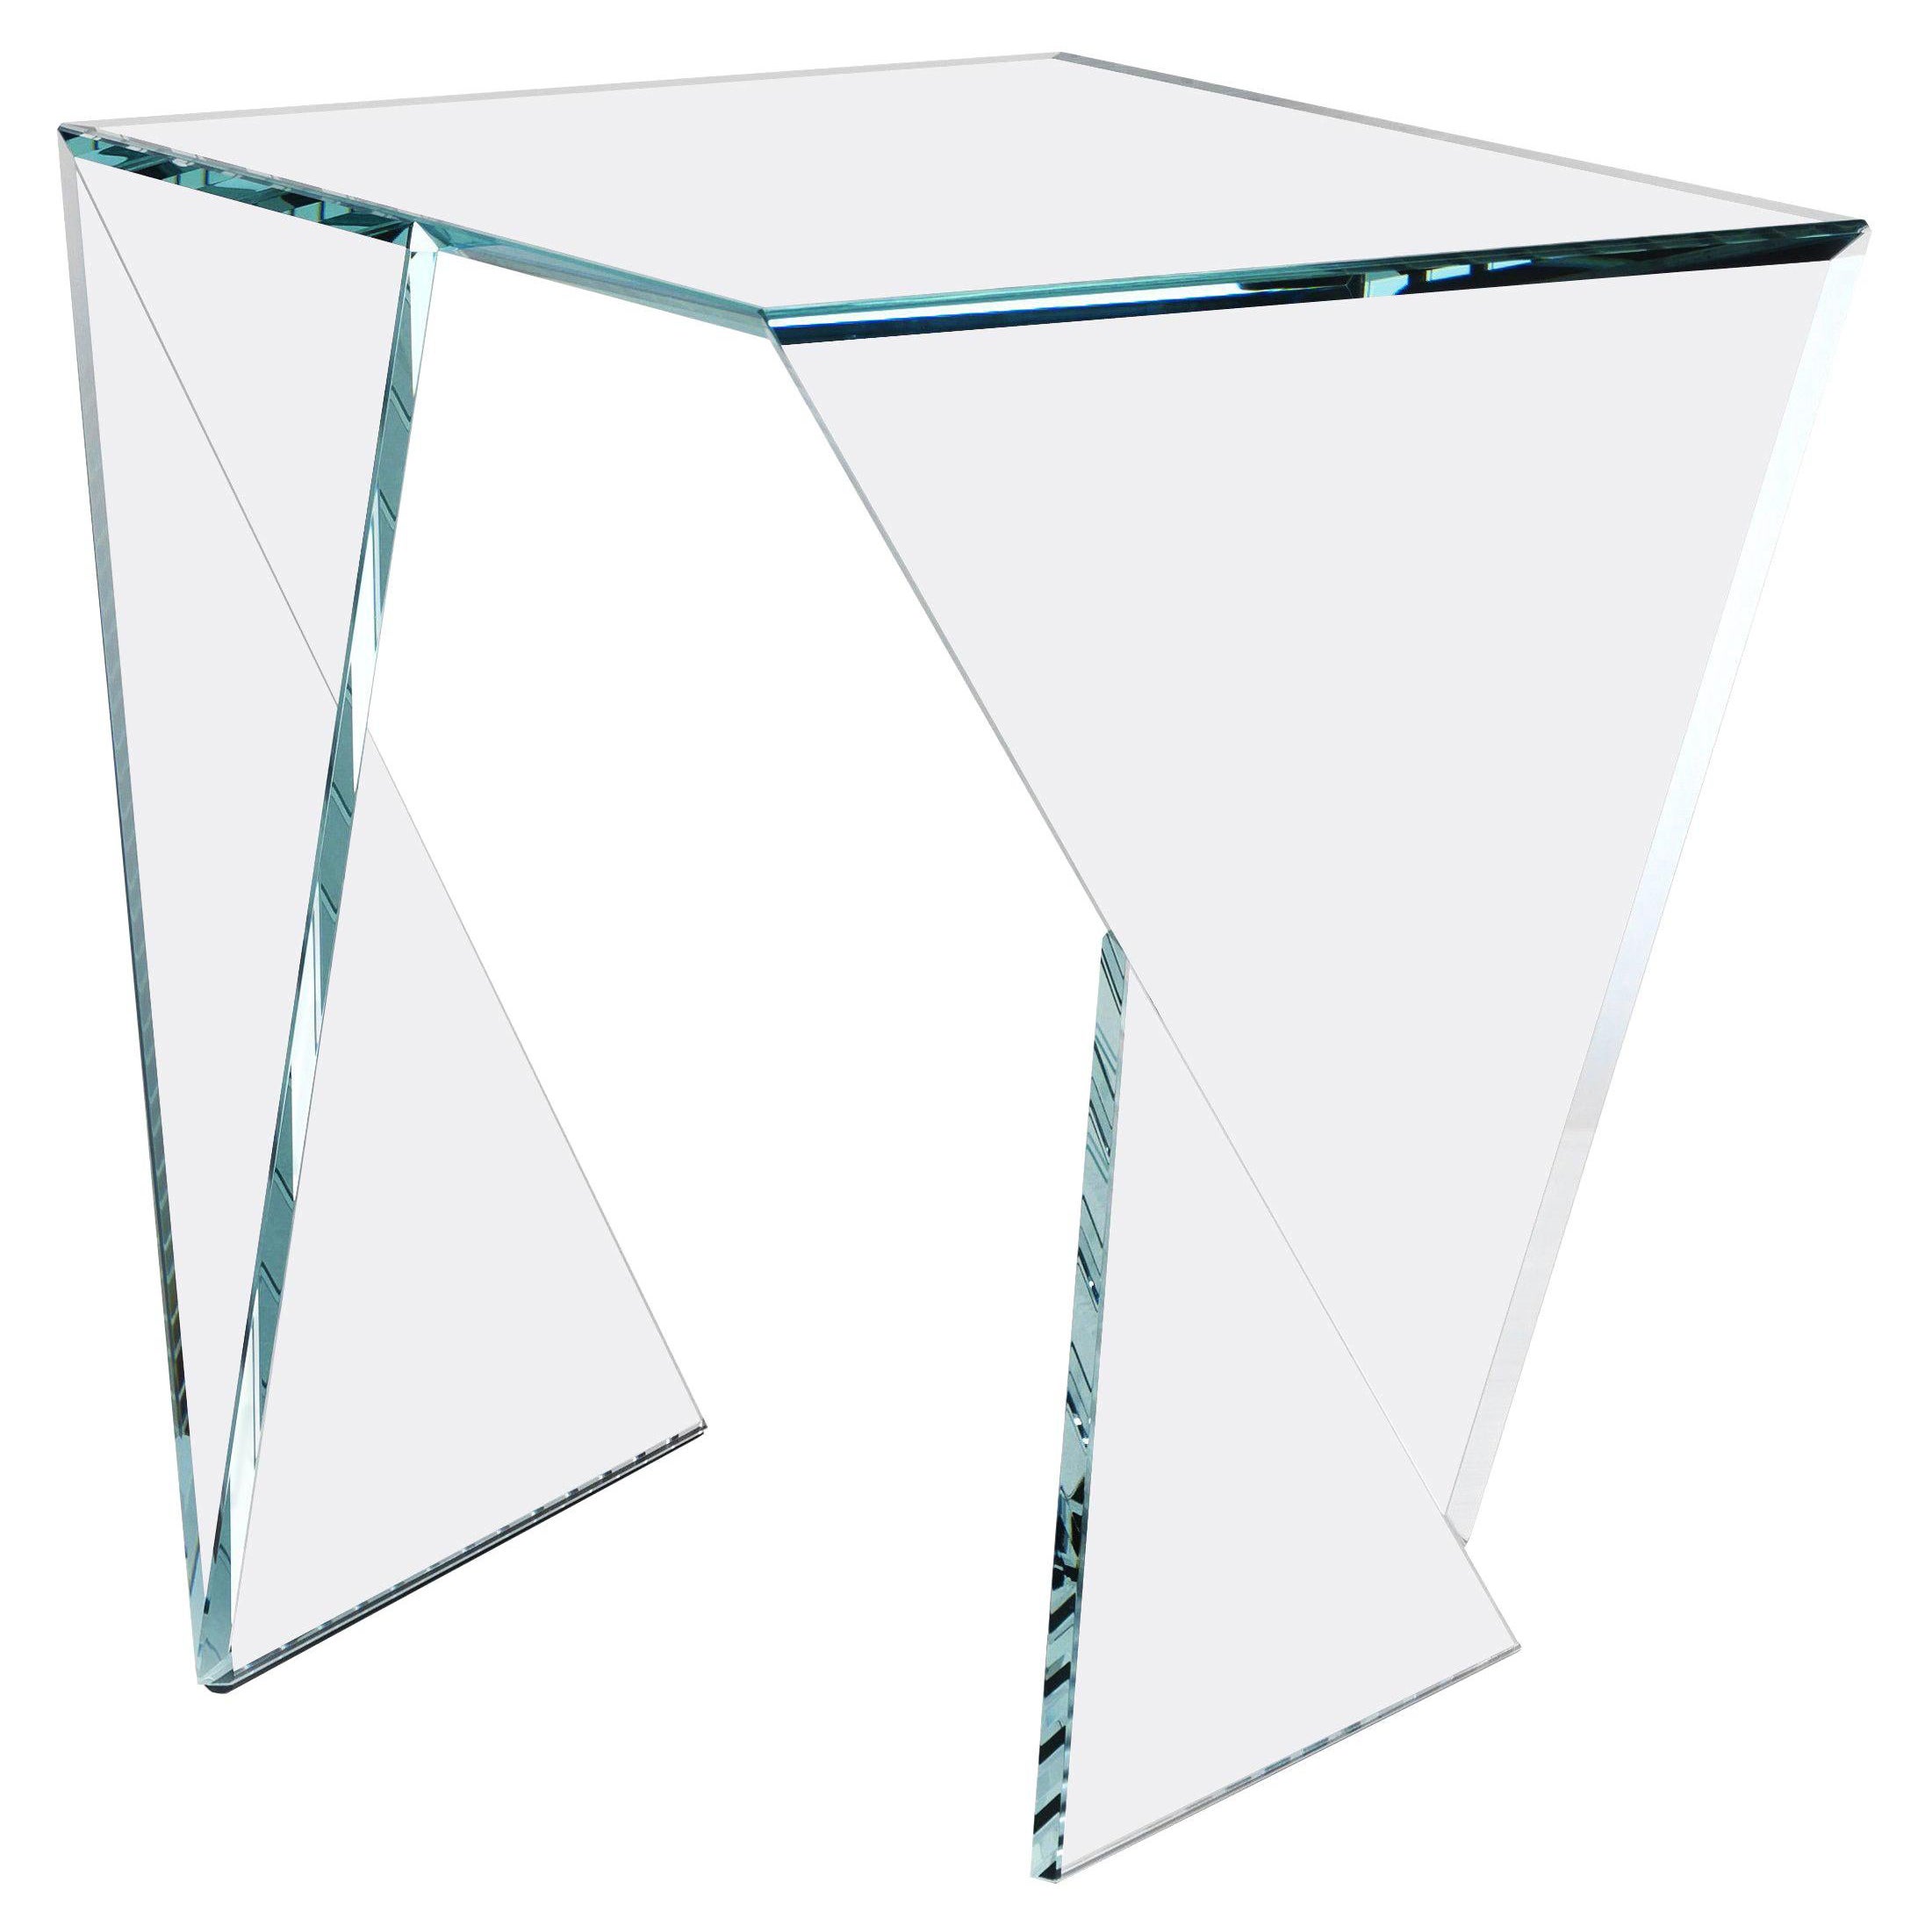 Beistelltisch Endtisch Glas Kristall Limited Edition Contemporary Italian Design